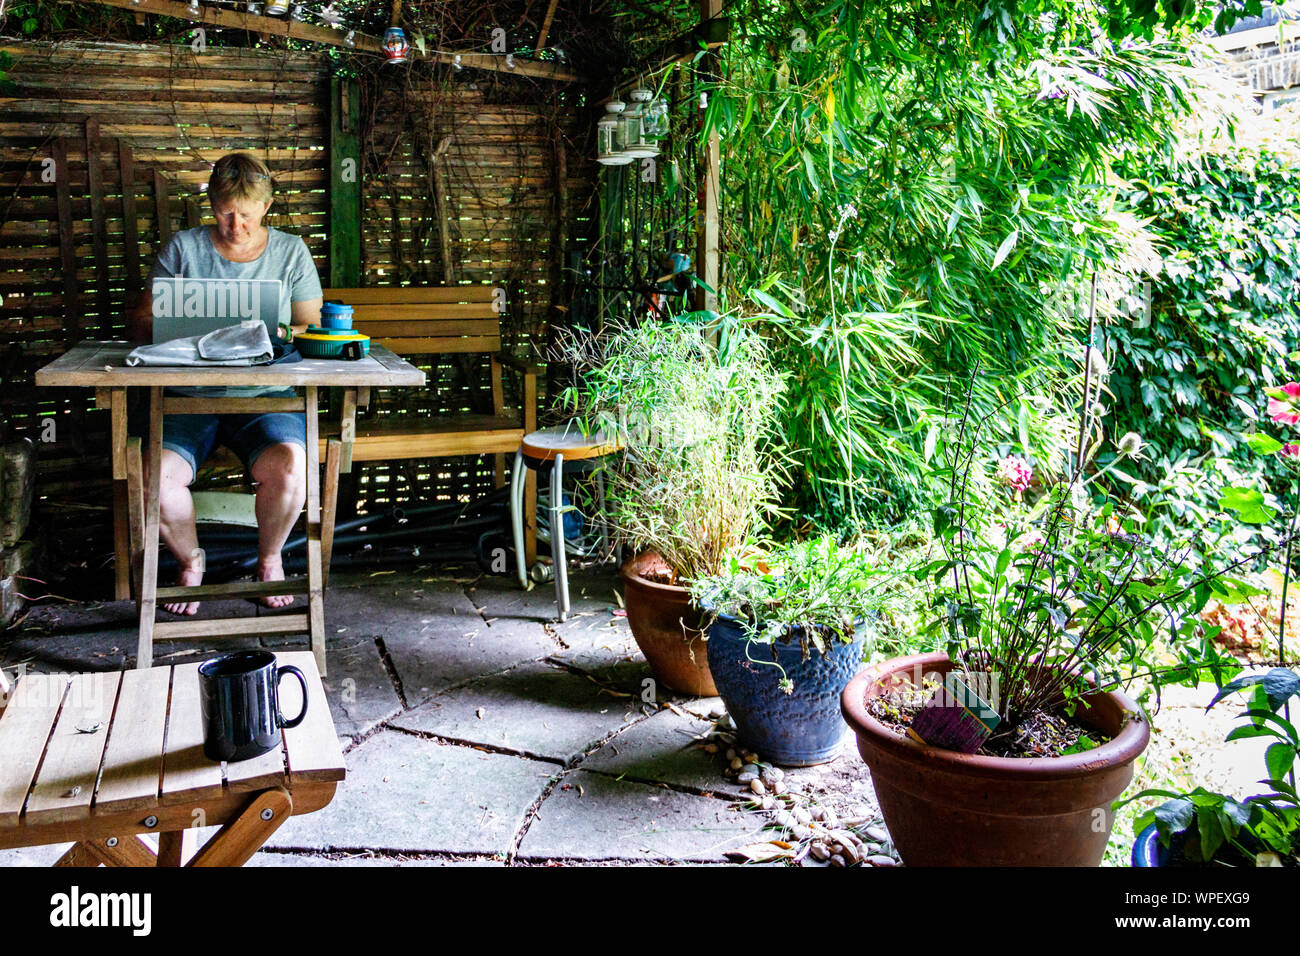 Professional donna che lavorano a casa, approfittando del clima caldo a sedersi sotto un pergolato di giardino, a nord di Londra, Regno Unito Foto Stock